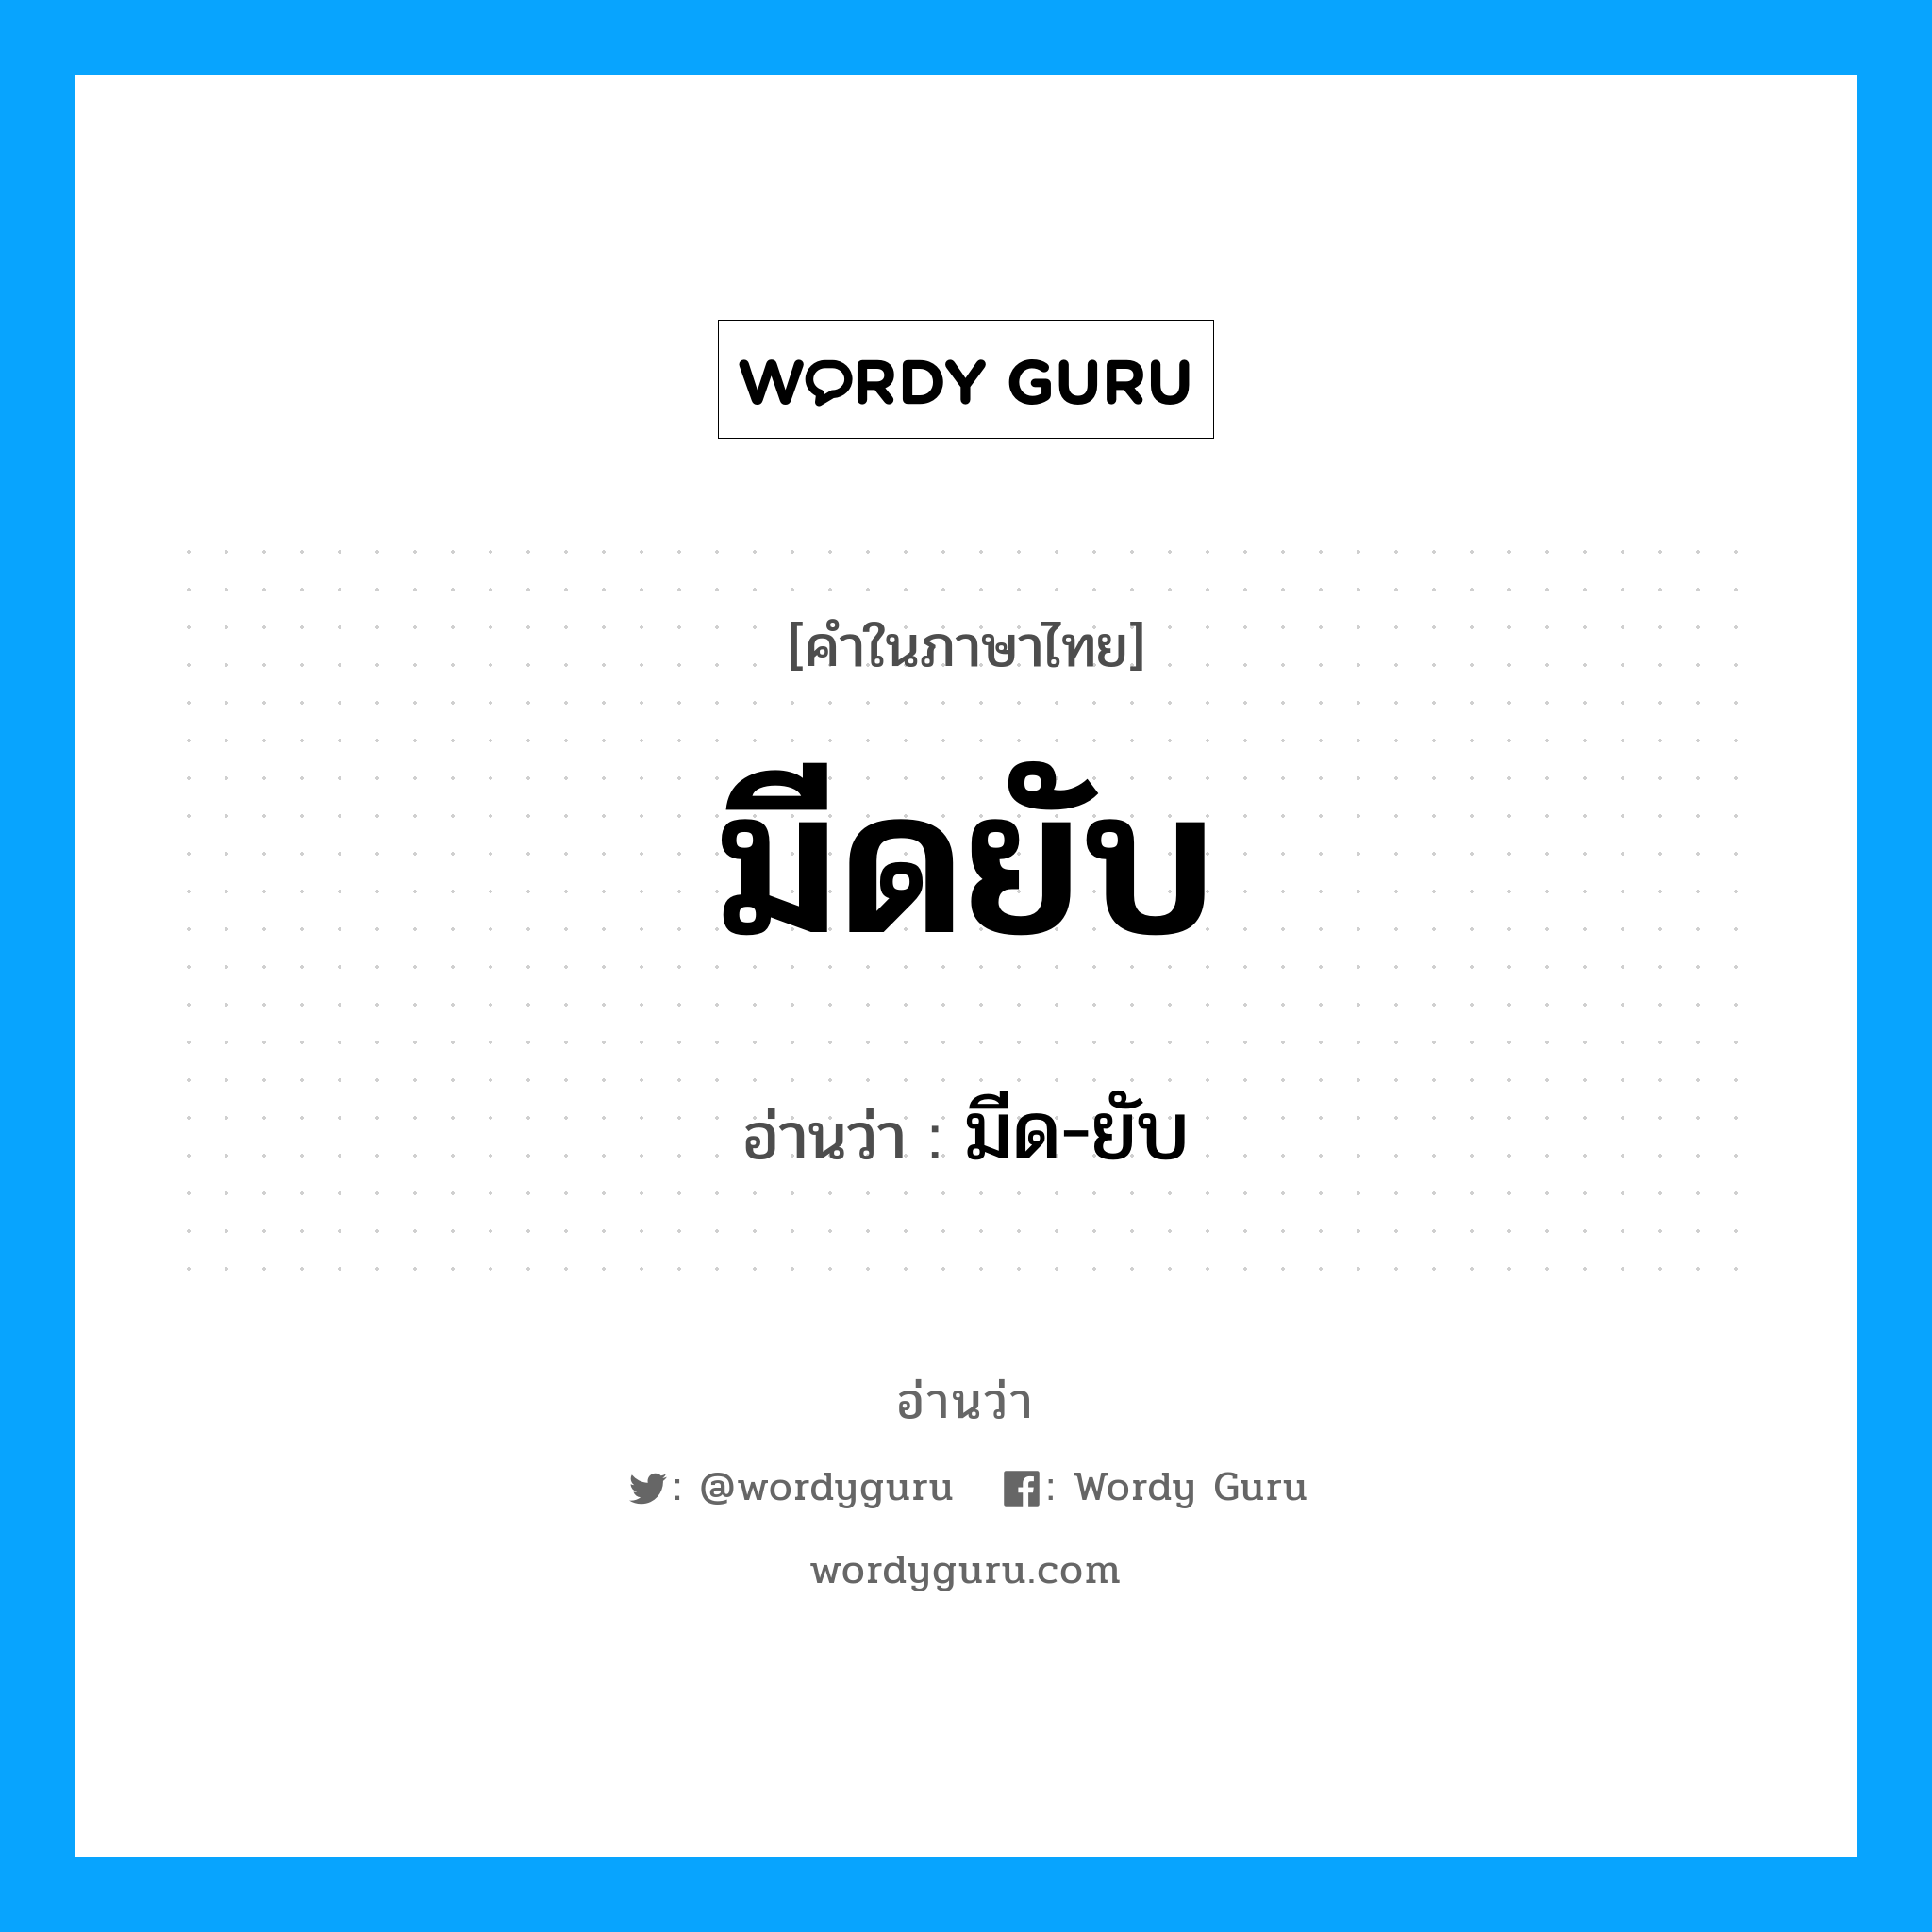 มีด-ยับ เป็นคำอ่านของคำไหน?, คำในภาษาไทย มีด-ยับ อ่านว่า มีดยับ